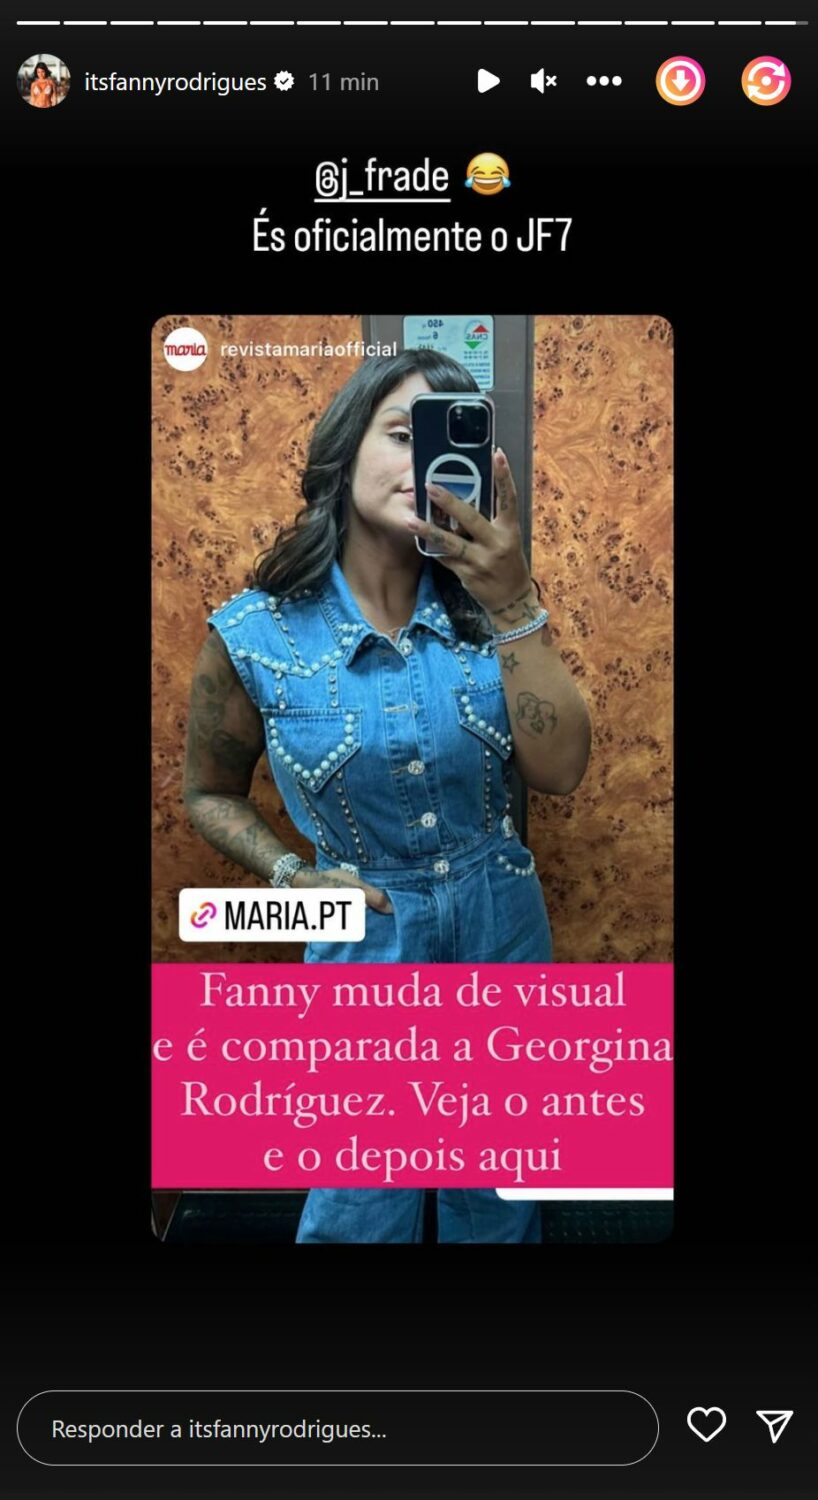 Fanny Rodrigues é &#8220;comparada&#8221; a Georgina Rodríguez e brinca com o namorado: &#8220;És oficialmente o JF7&#8230;&#8221;